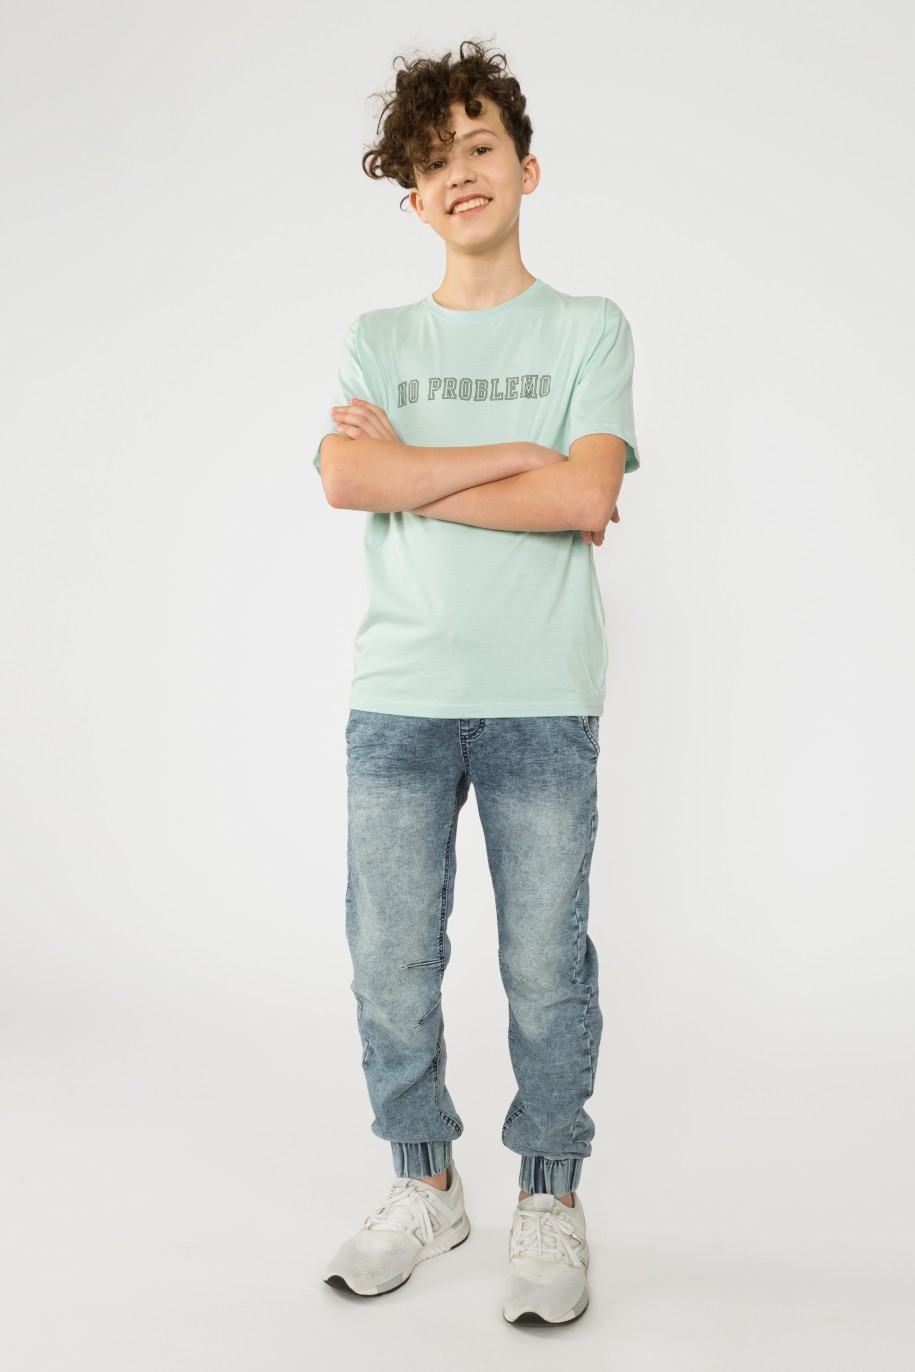 Miętowy t-shirt dla chłopaka NO PROBLEMO - 33062